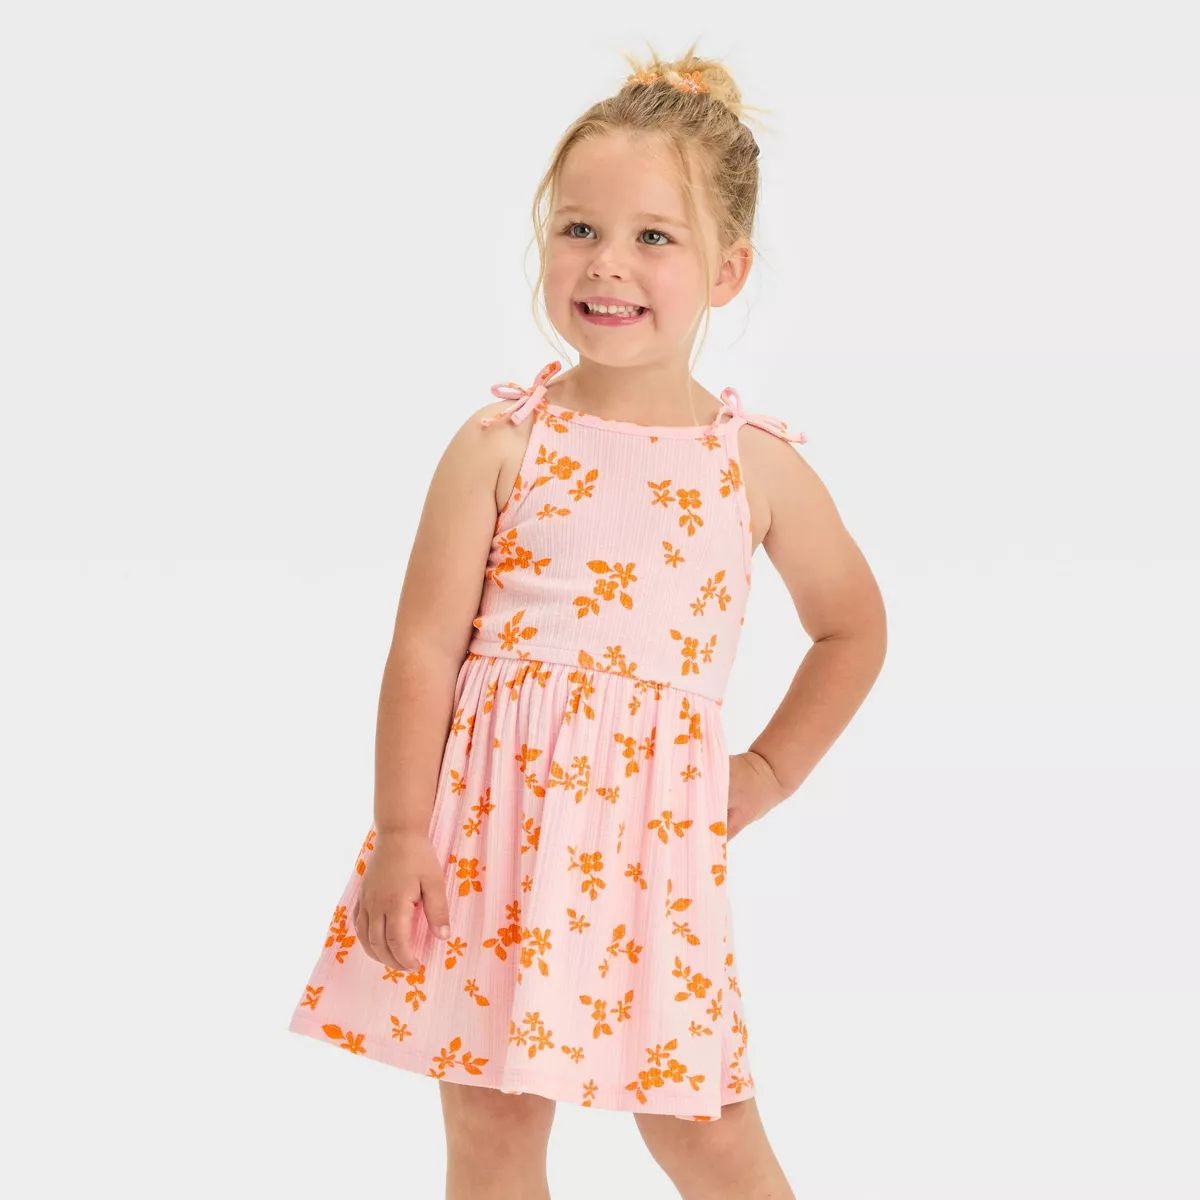 Toddler Girls' Floral Dress - Cat & Jack™ Light Pink | Target